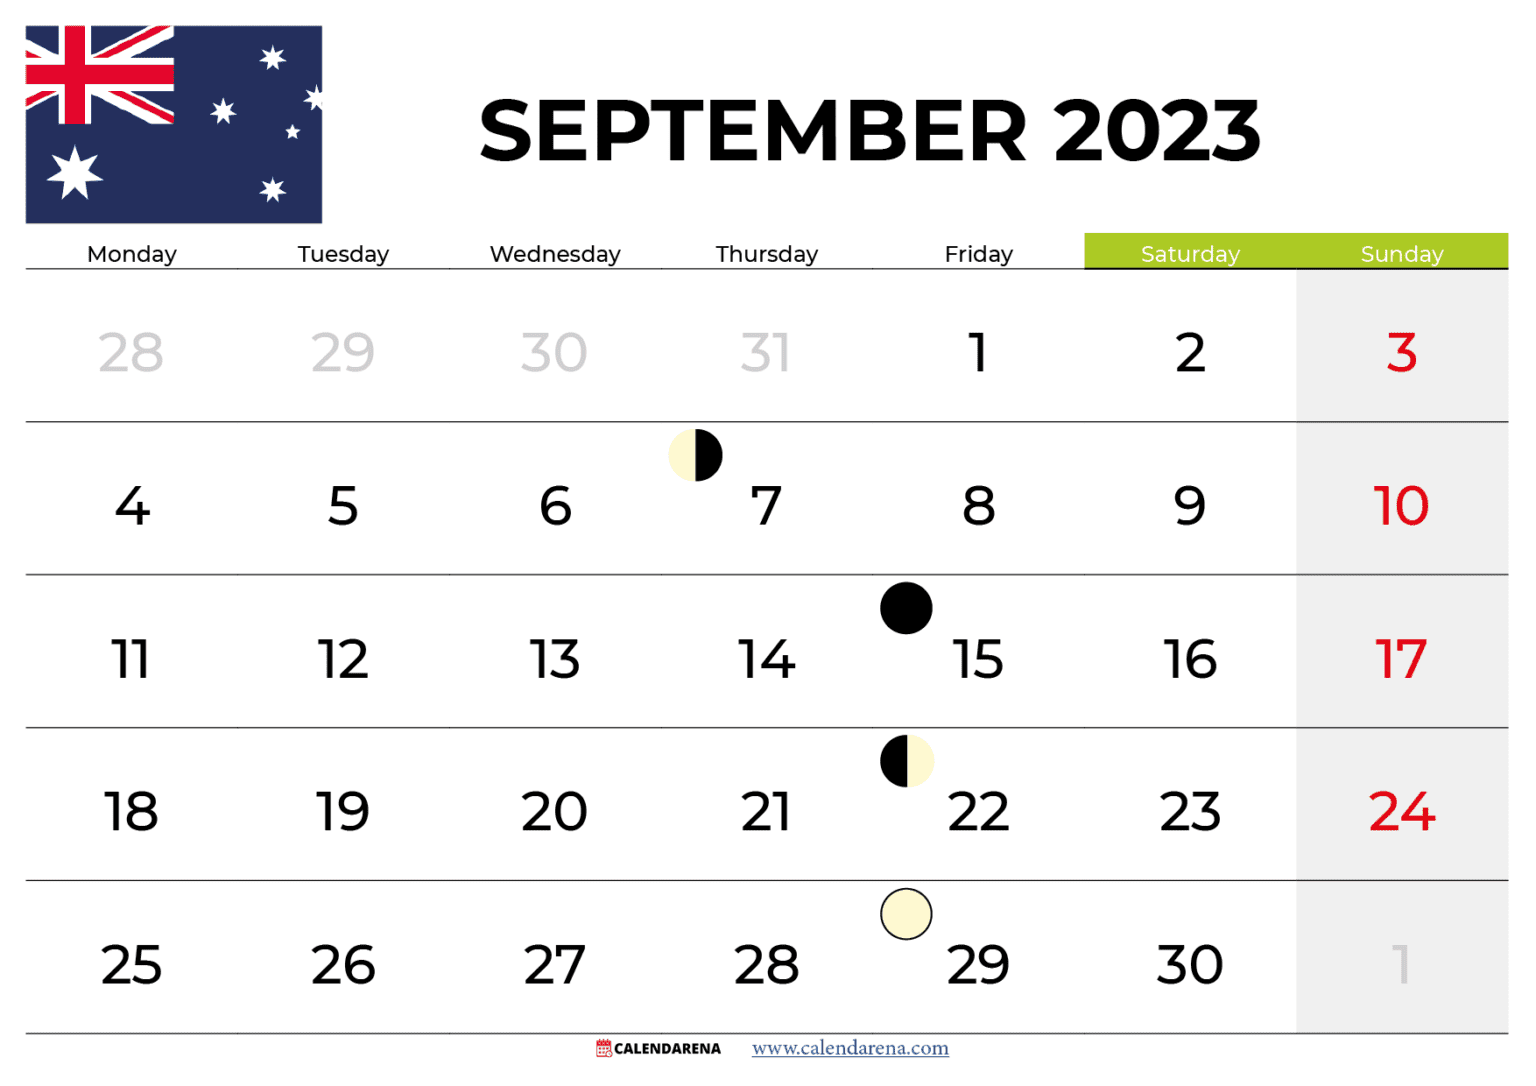 expo-2020-dubai-october-calendar-australia-expo-2020-dubai